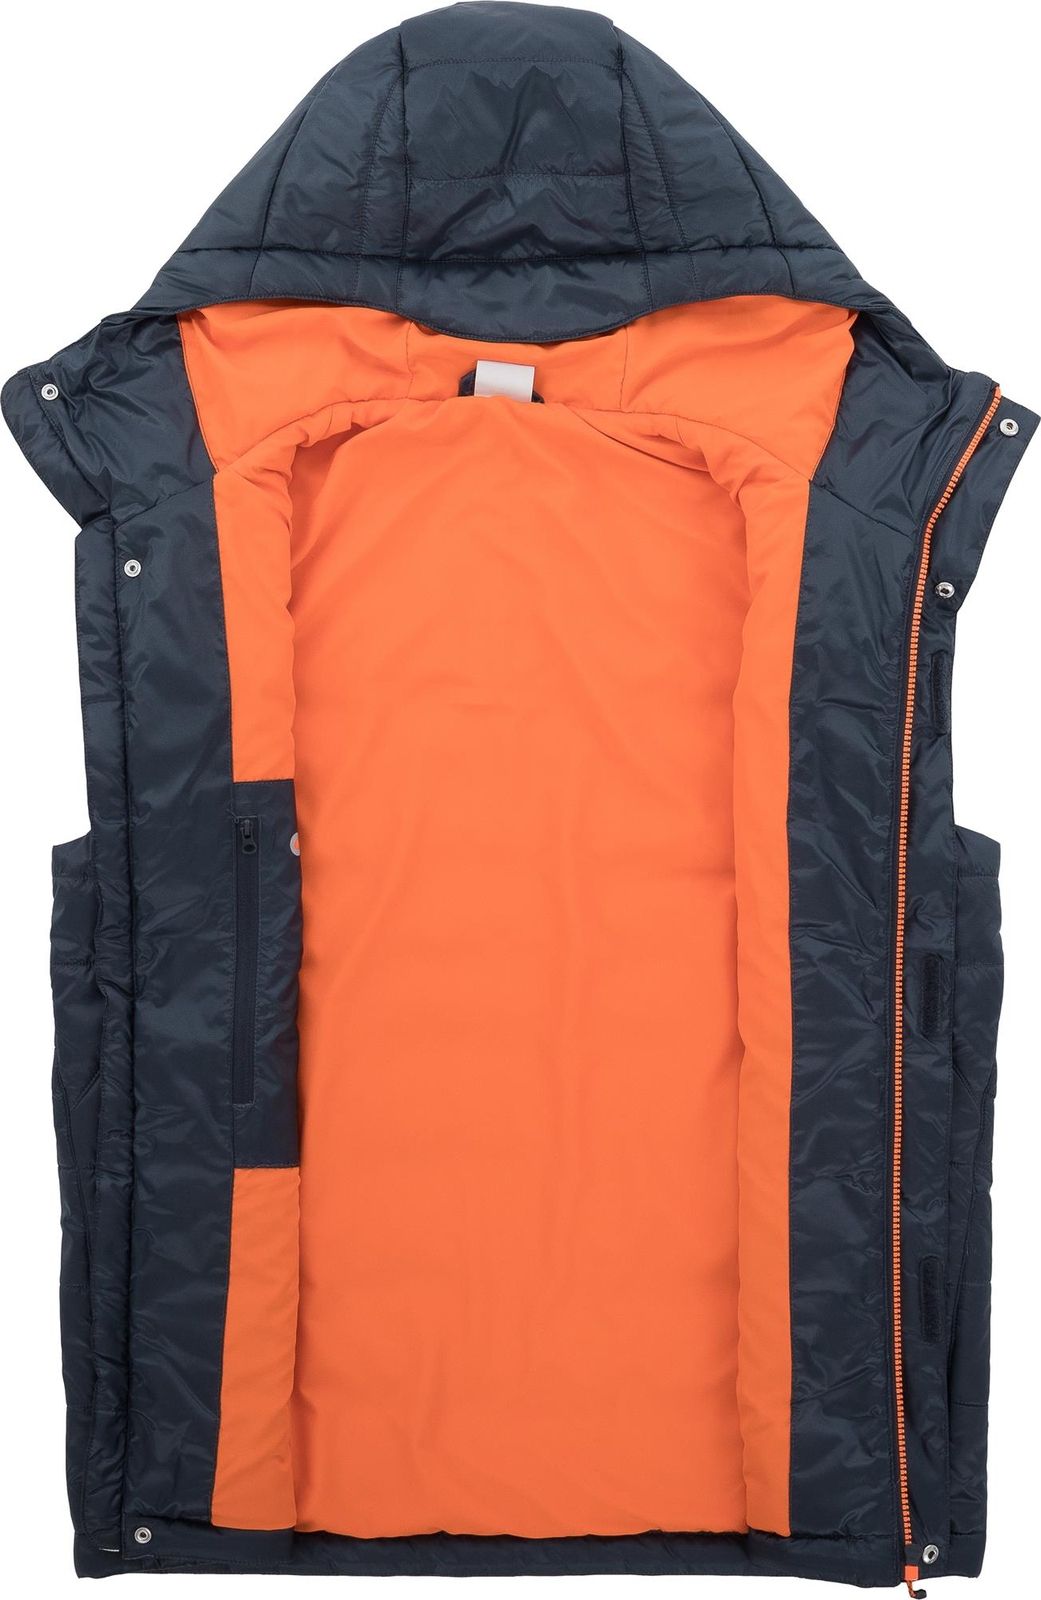   Merrell Men's Sleeveless Jacket Vest, : -. S19AMRVEM01-Z4.  52